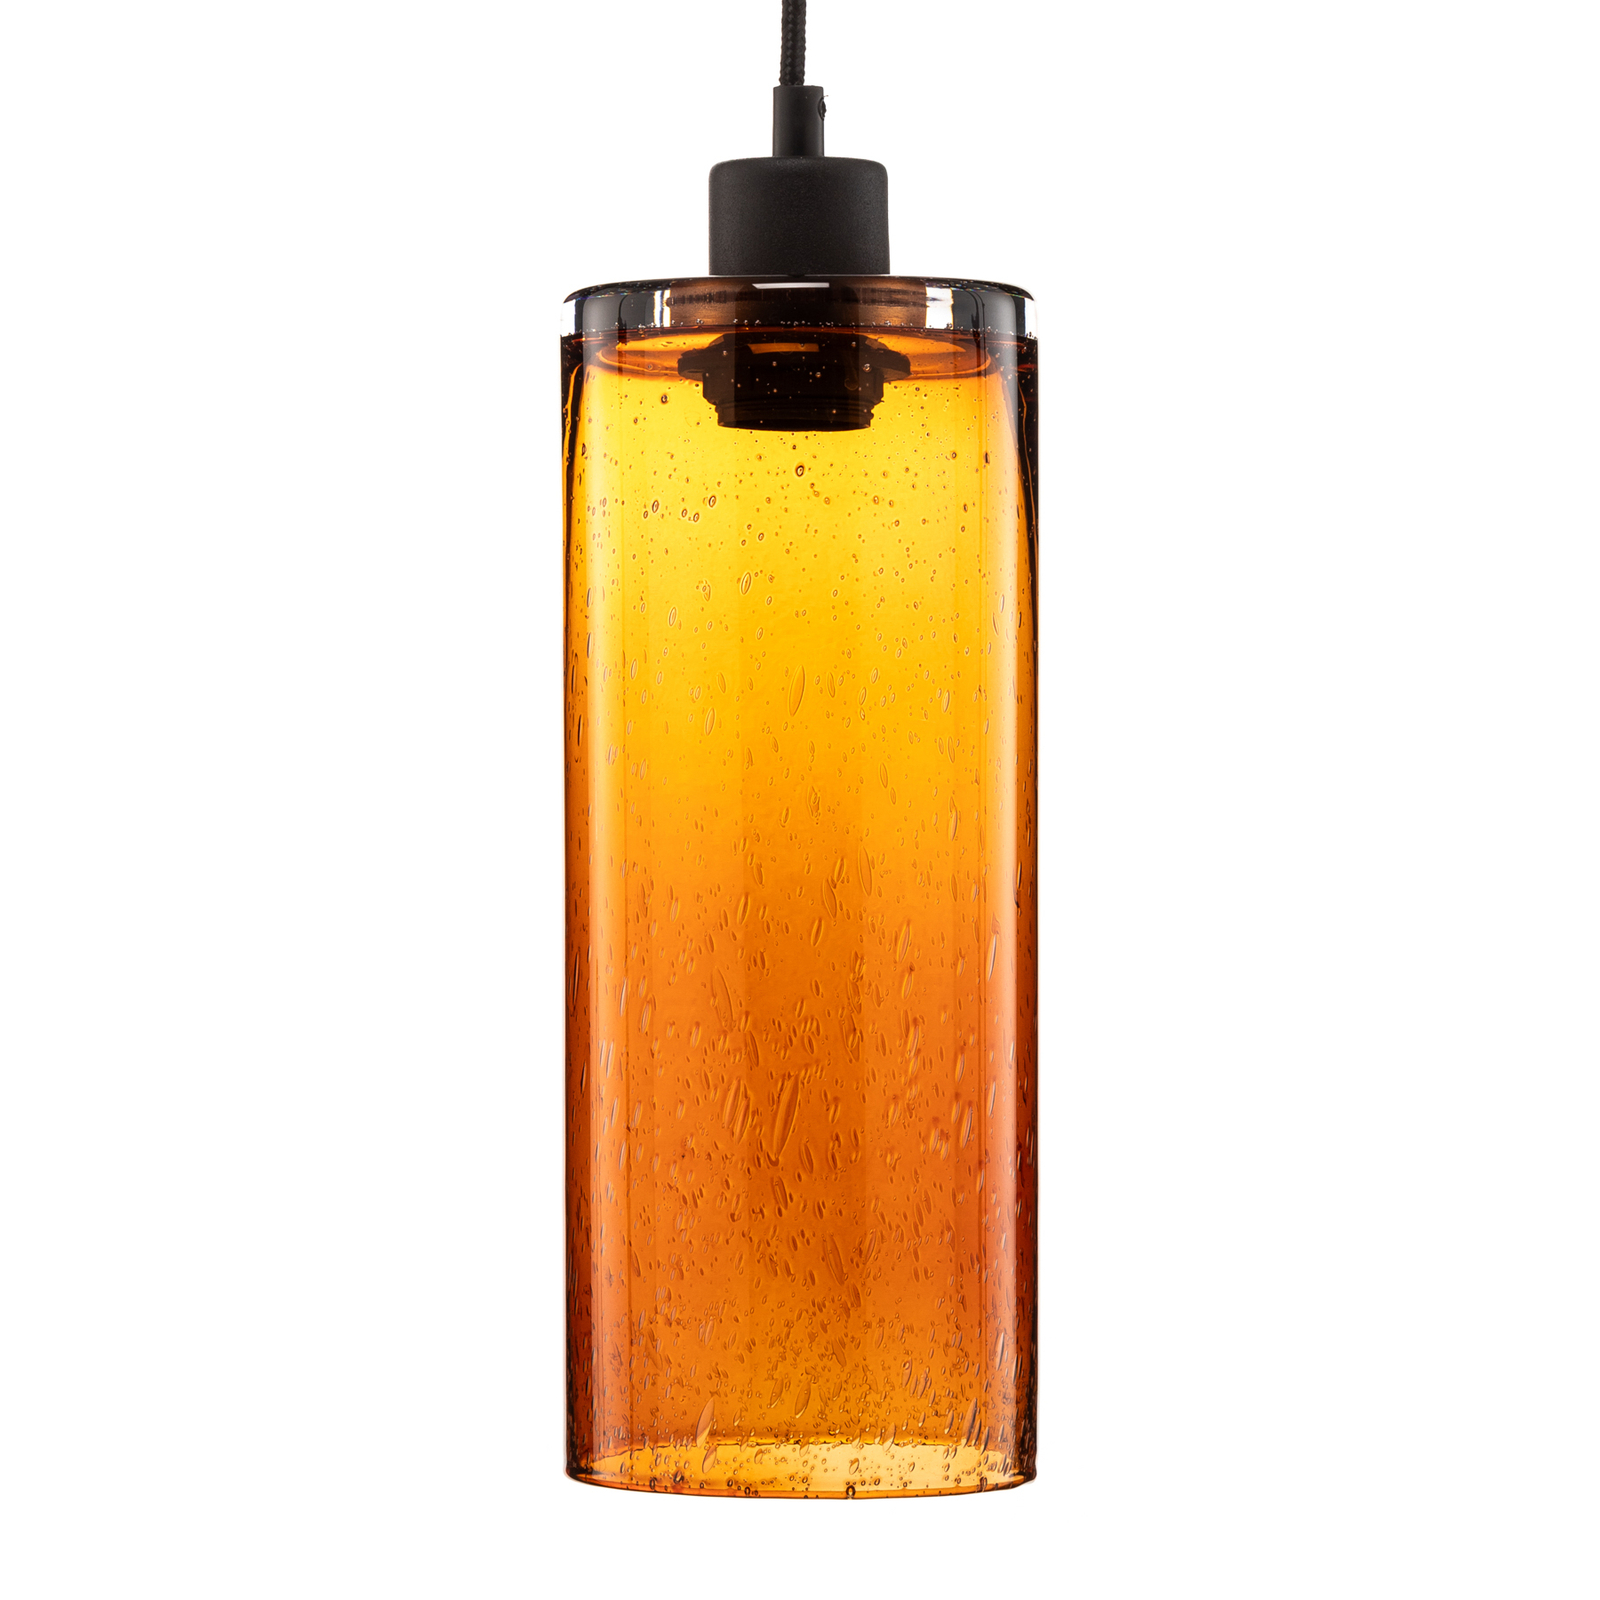 Hanging light Soda glass cylinder amber Ø 12cm